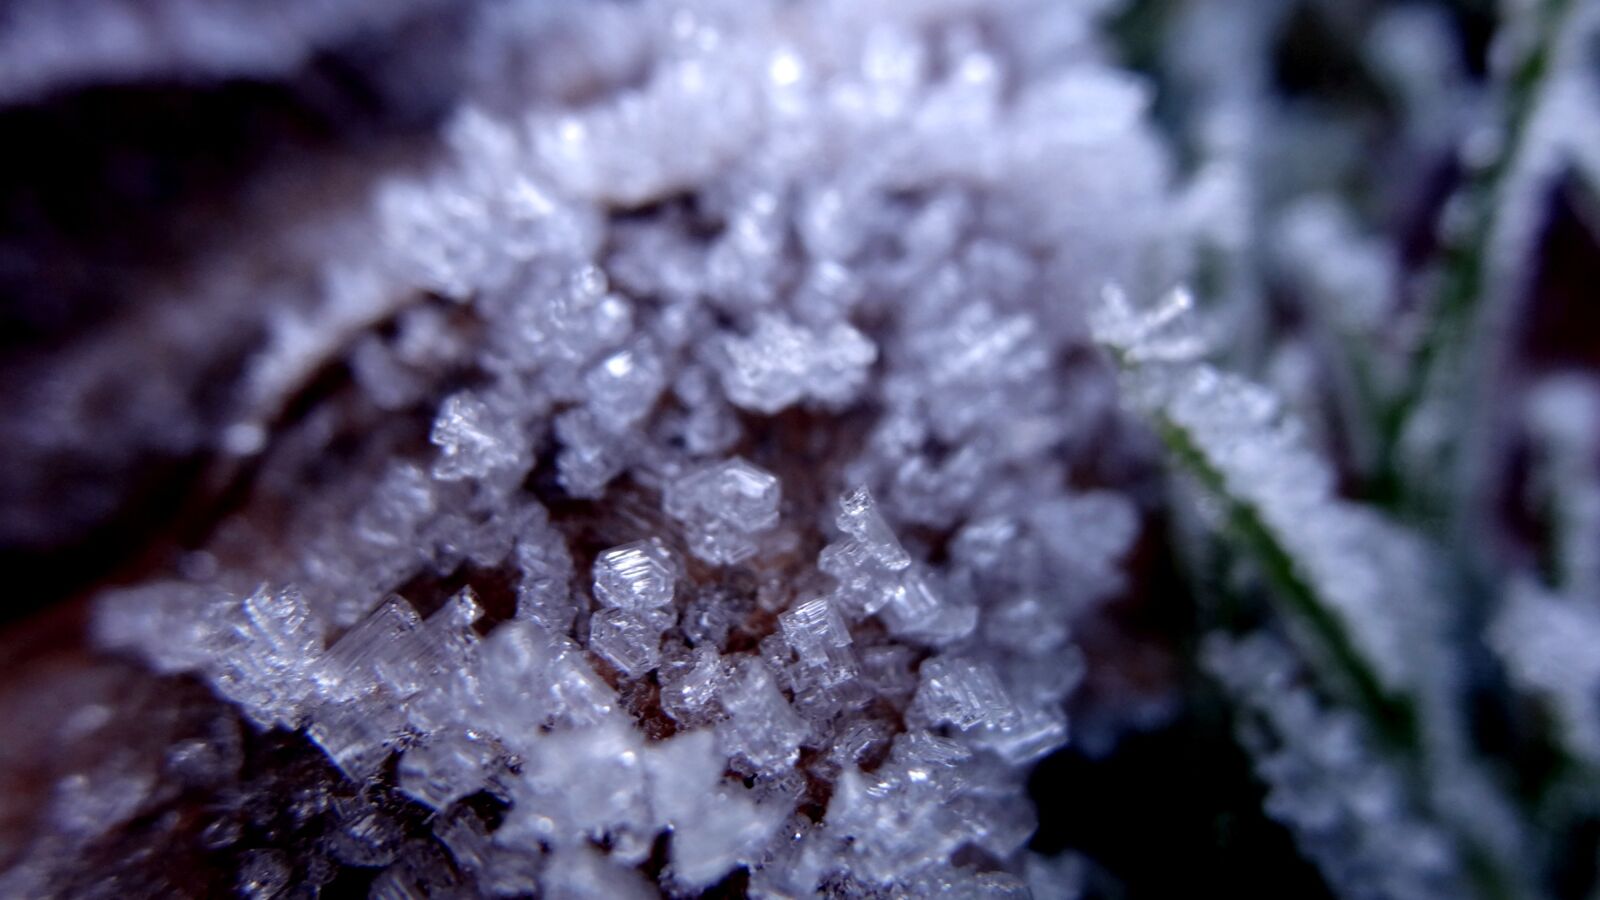 Sony Cyber-shot DSC-HX20V sample photo. Frost, nature, frozen photography